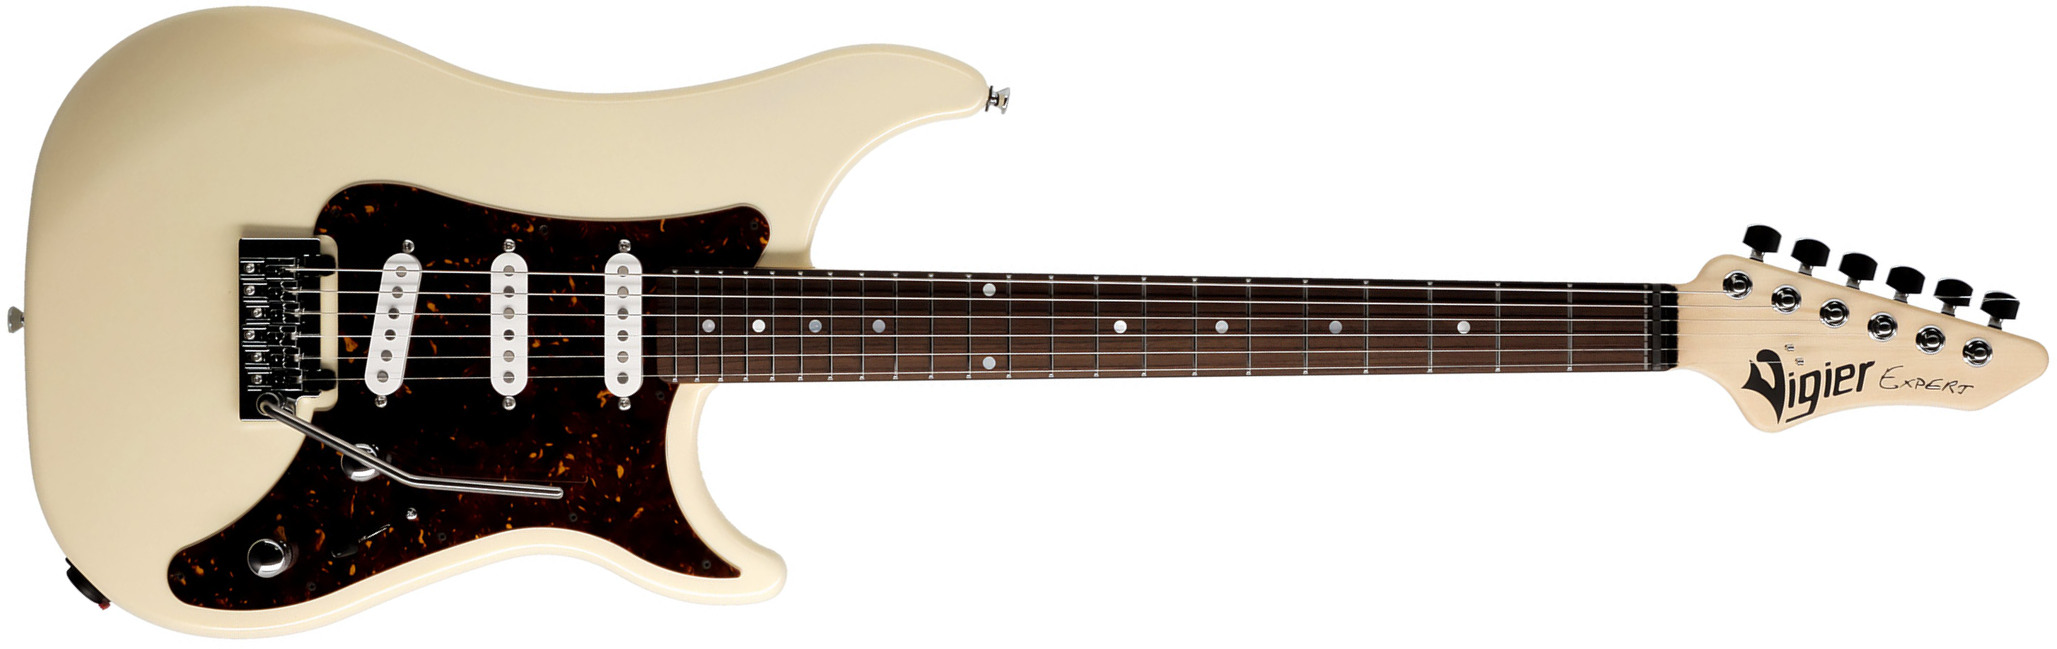 Vigier Expert Classic Rock 3s Trem Rw - Retro White - E-Gitarre in Str-Form - Main picture